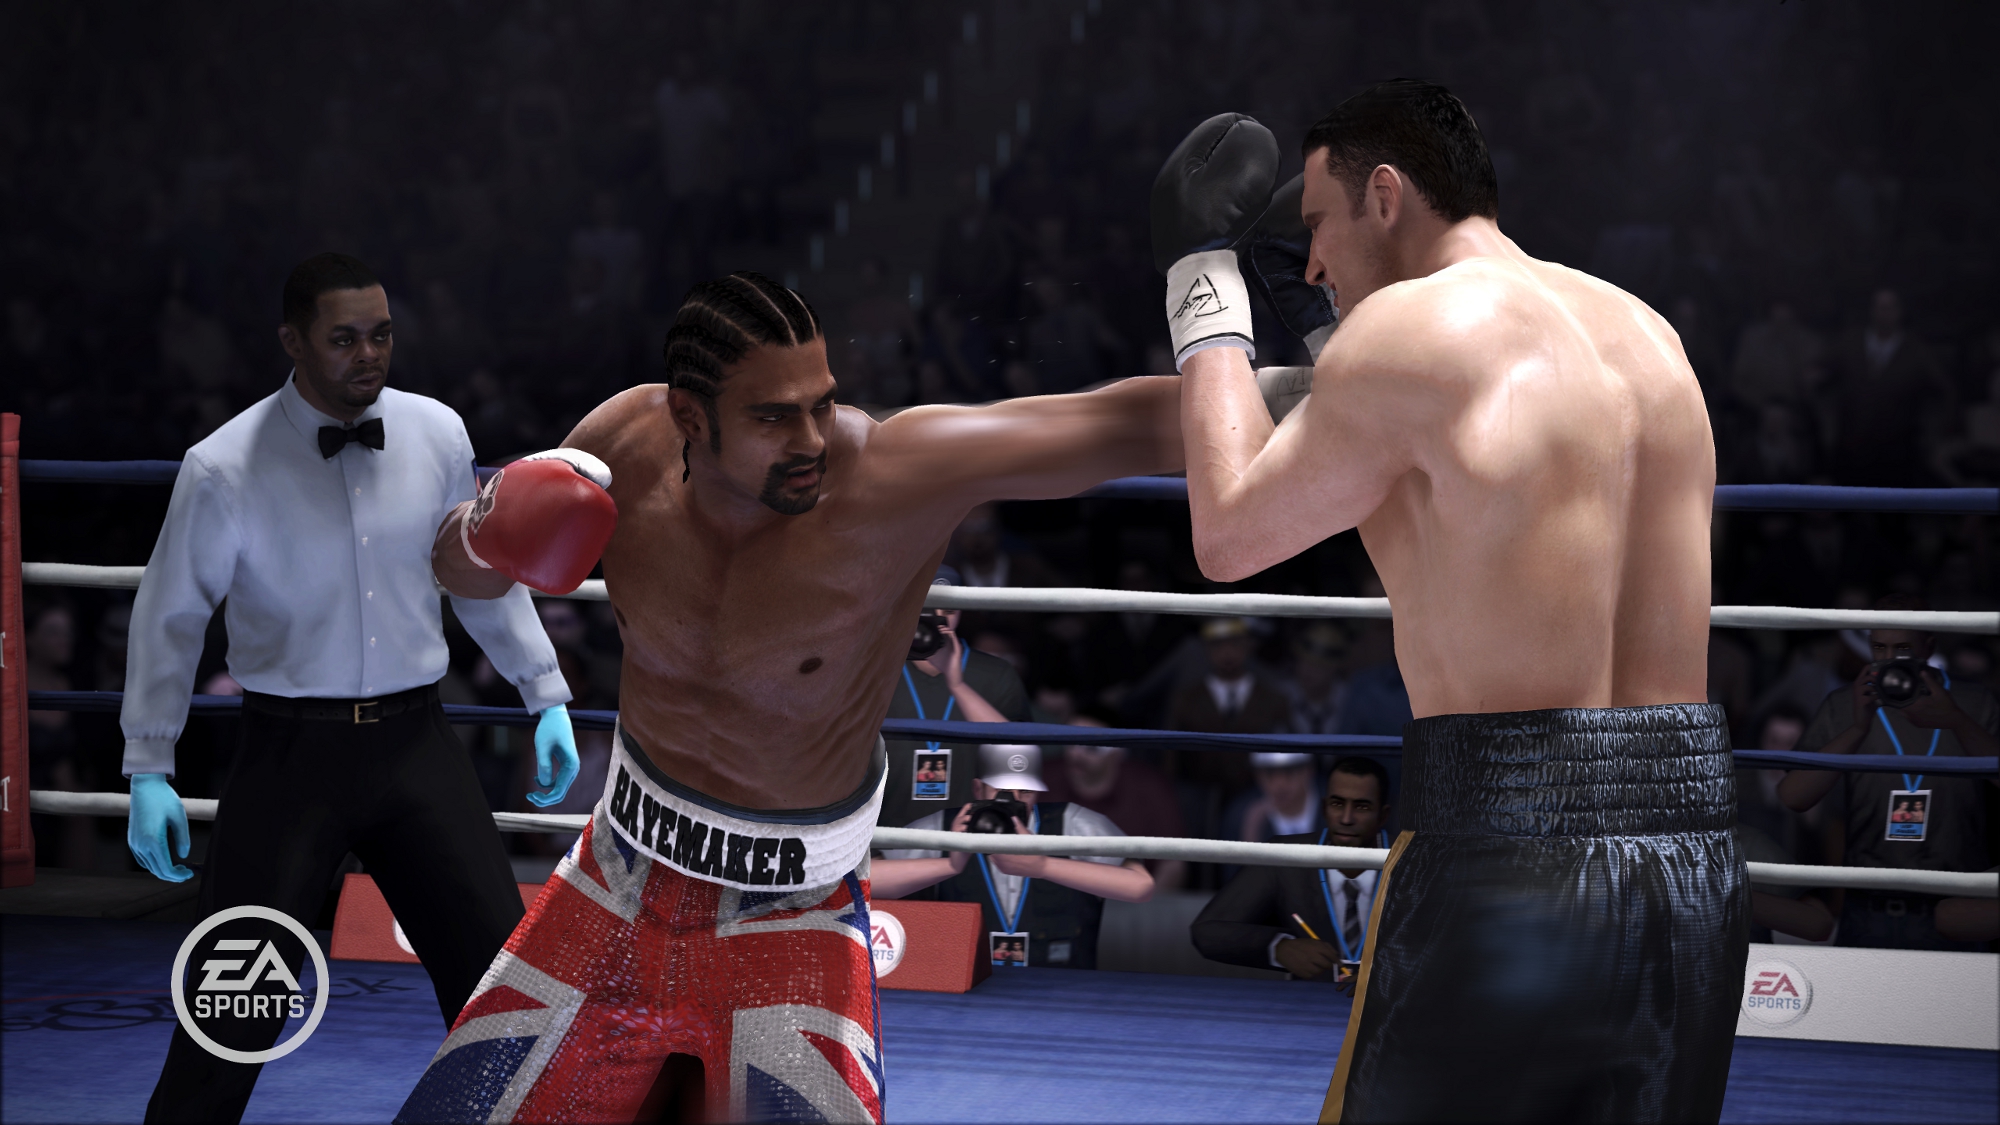 Rykten: ett nytt Fight Night-spel kan komma att lanseras i år